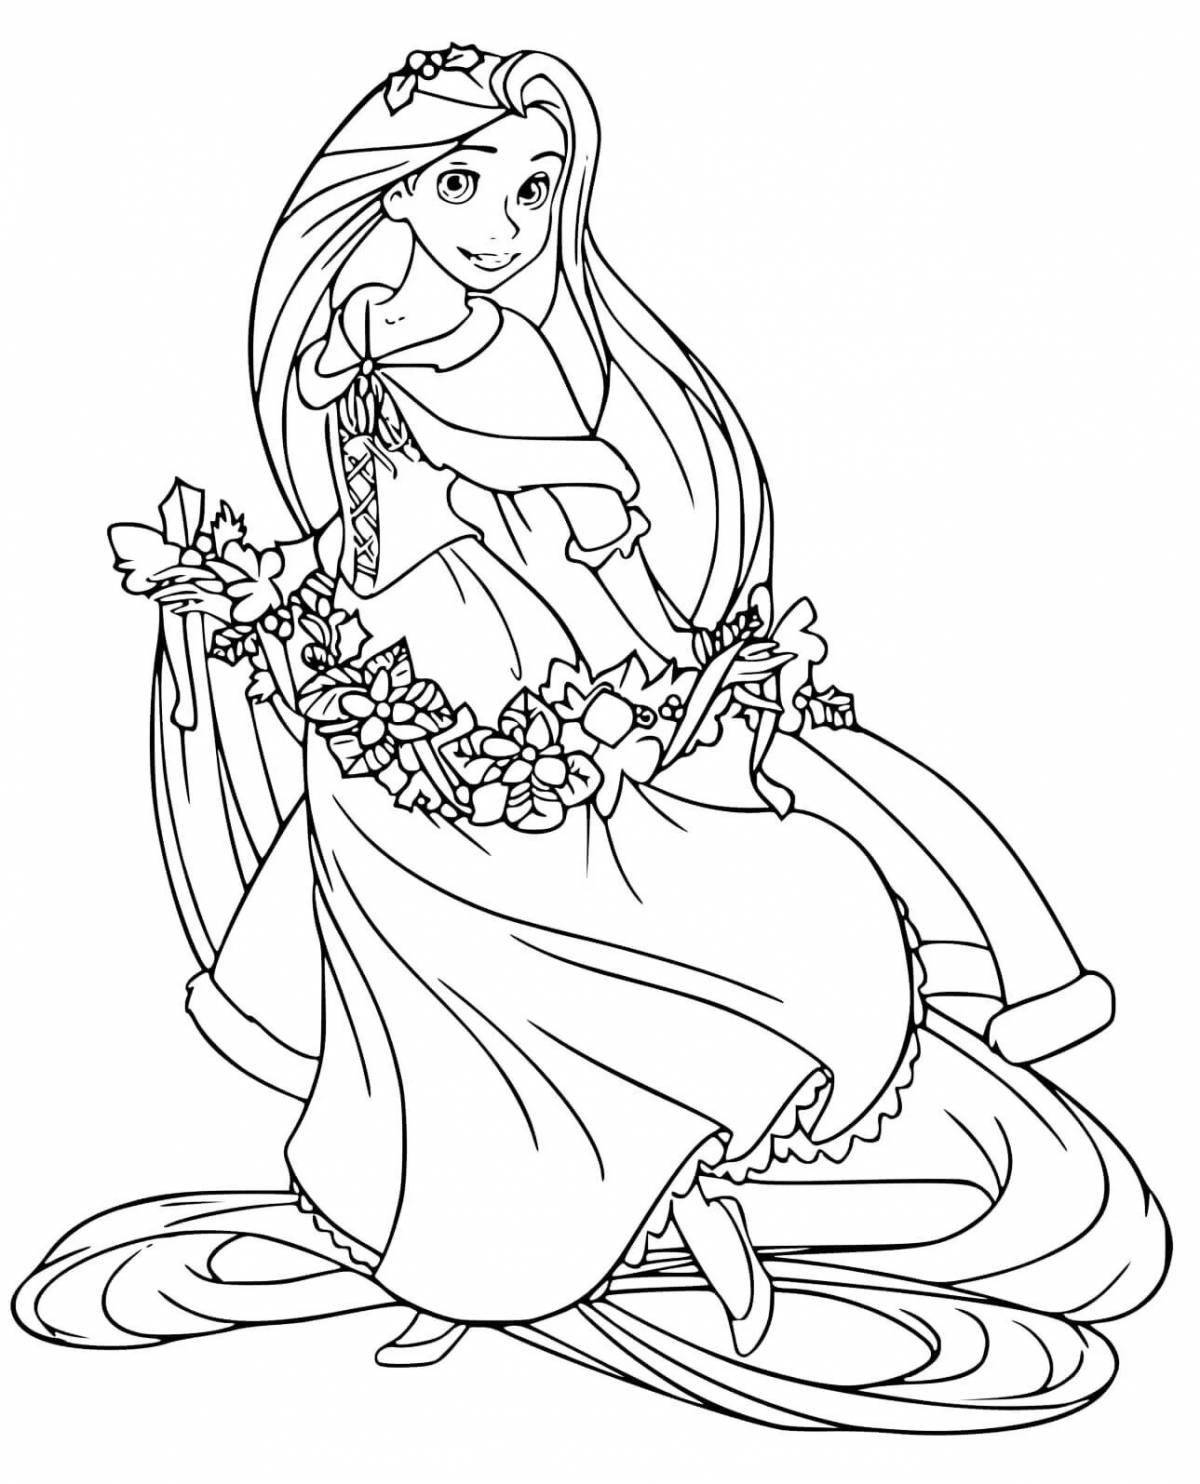 Раскраска изящная принцесса с длинными волосами